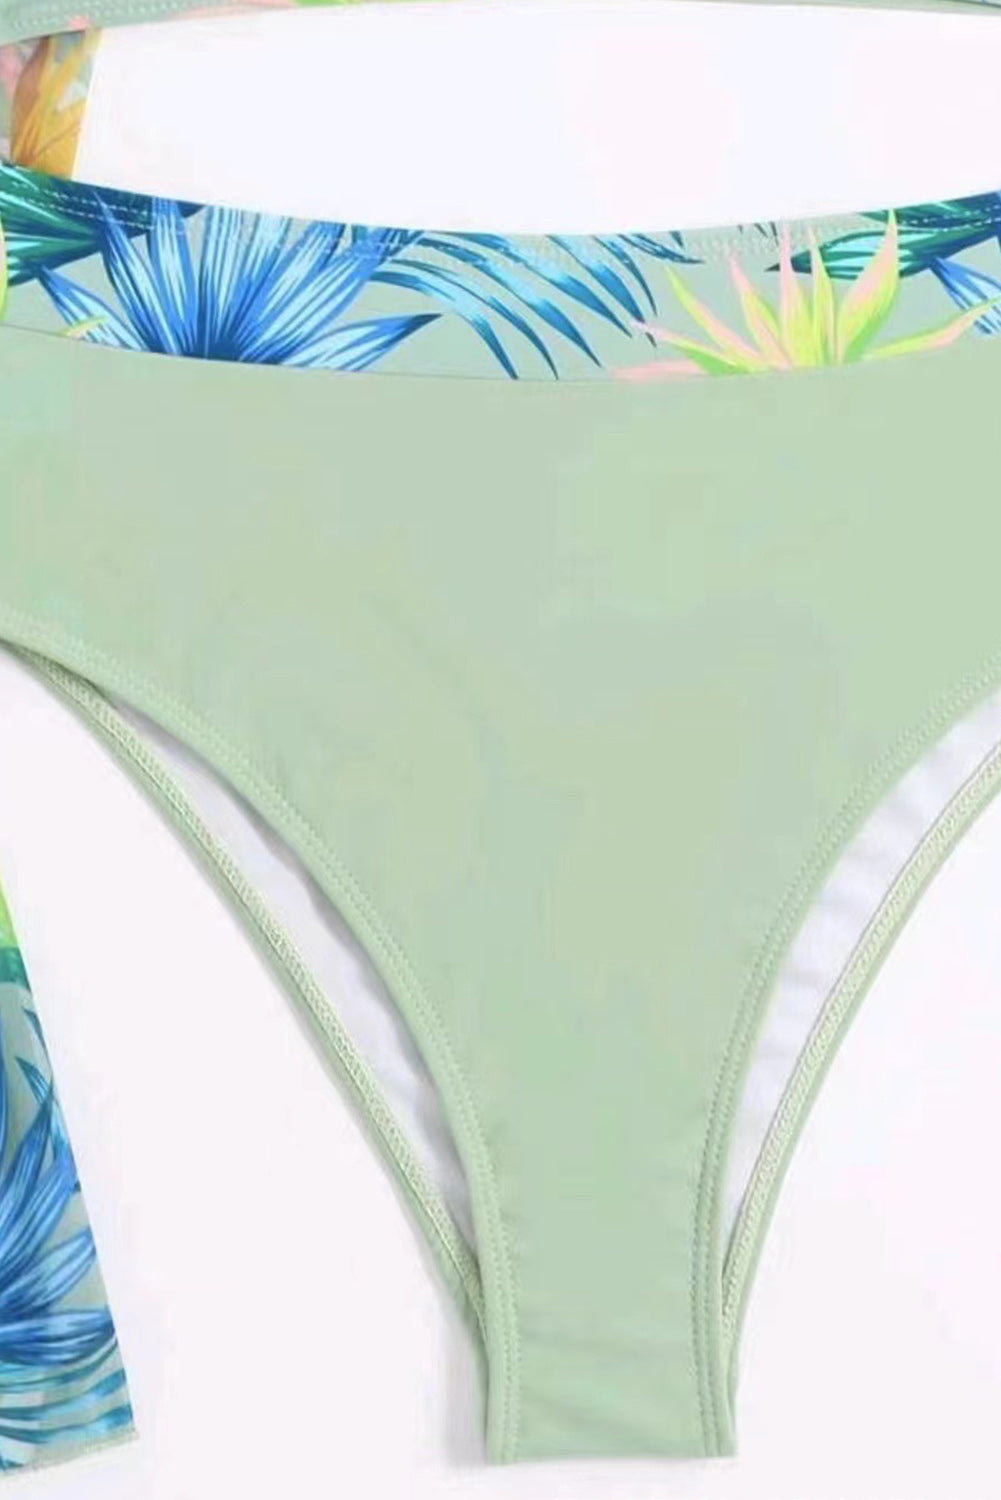 Laurel Green 3-delni bikini komplet s tropskim kontrastom in povodcem s prevleko